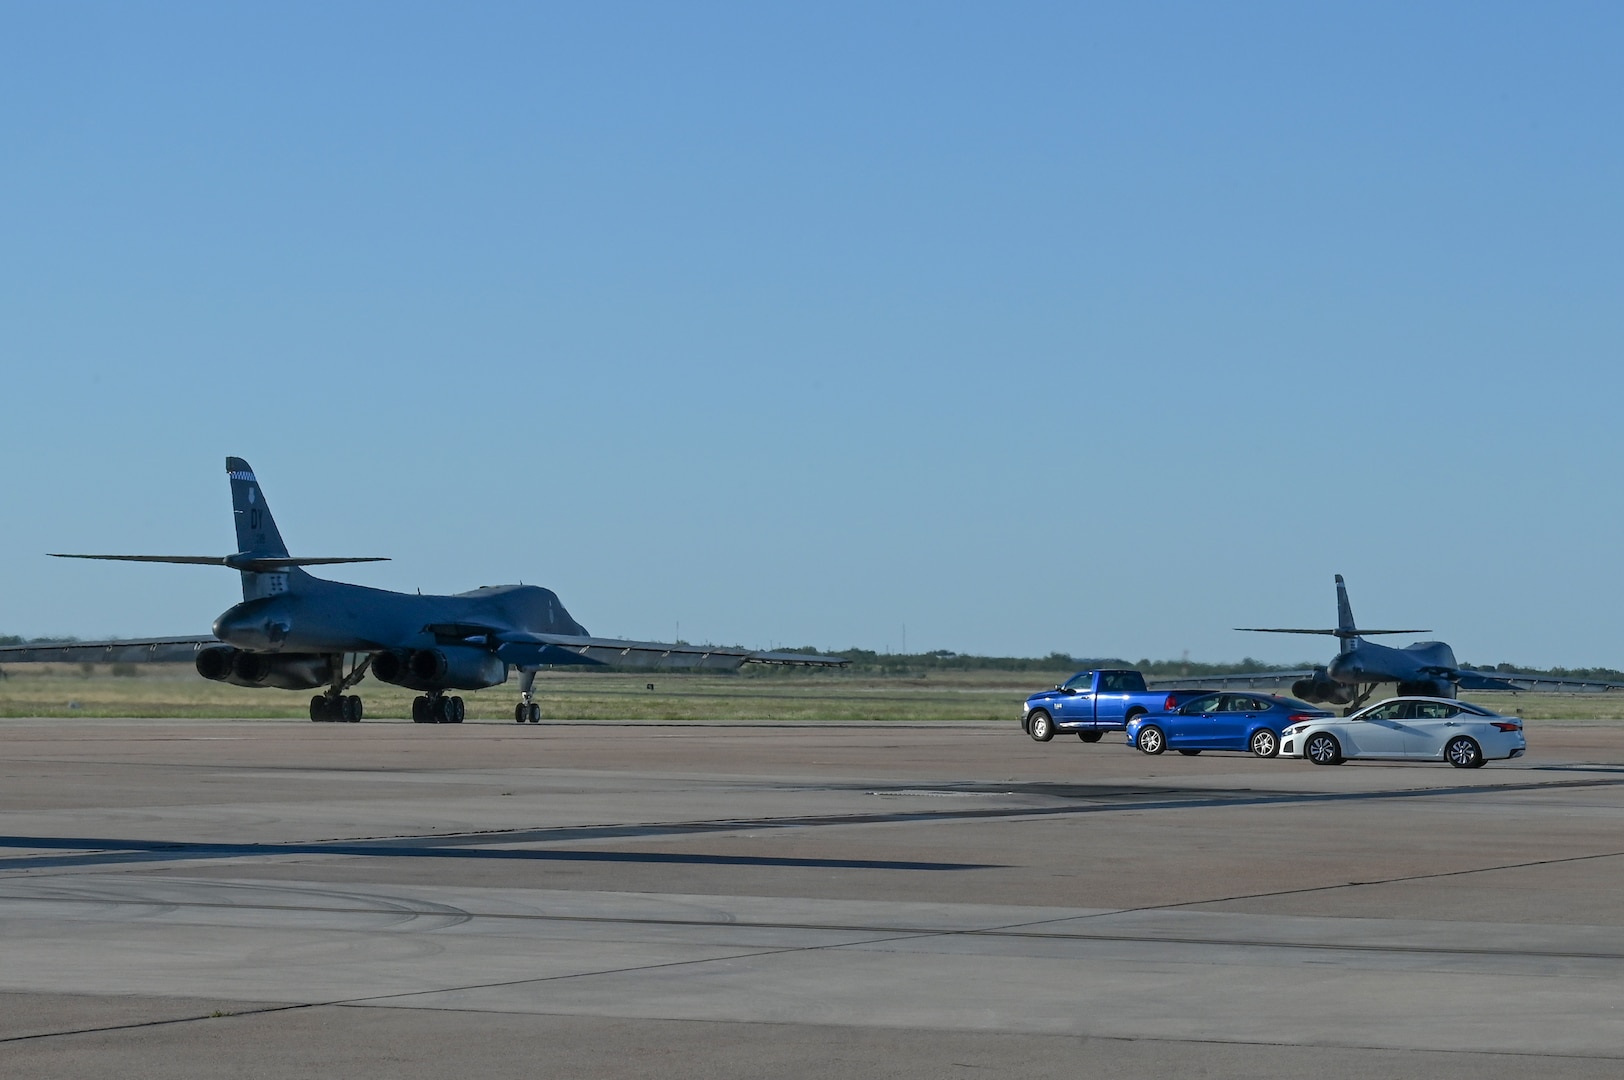 U.S. B-1B Lancers arrive in the UK for BTF 24-1 > U.S. Strategic